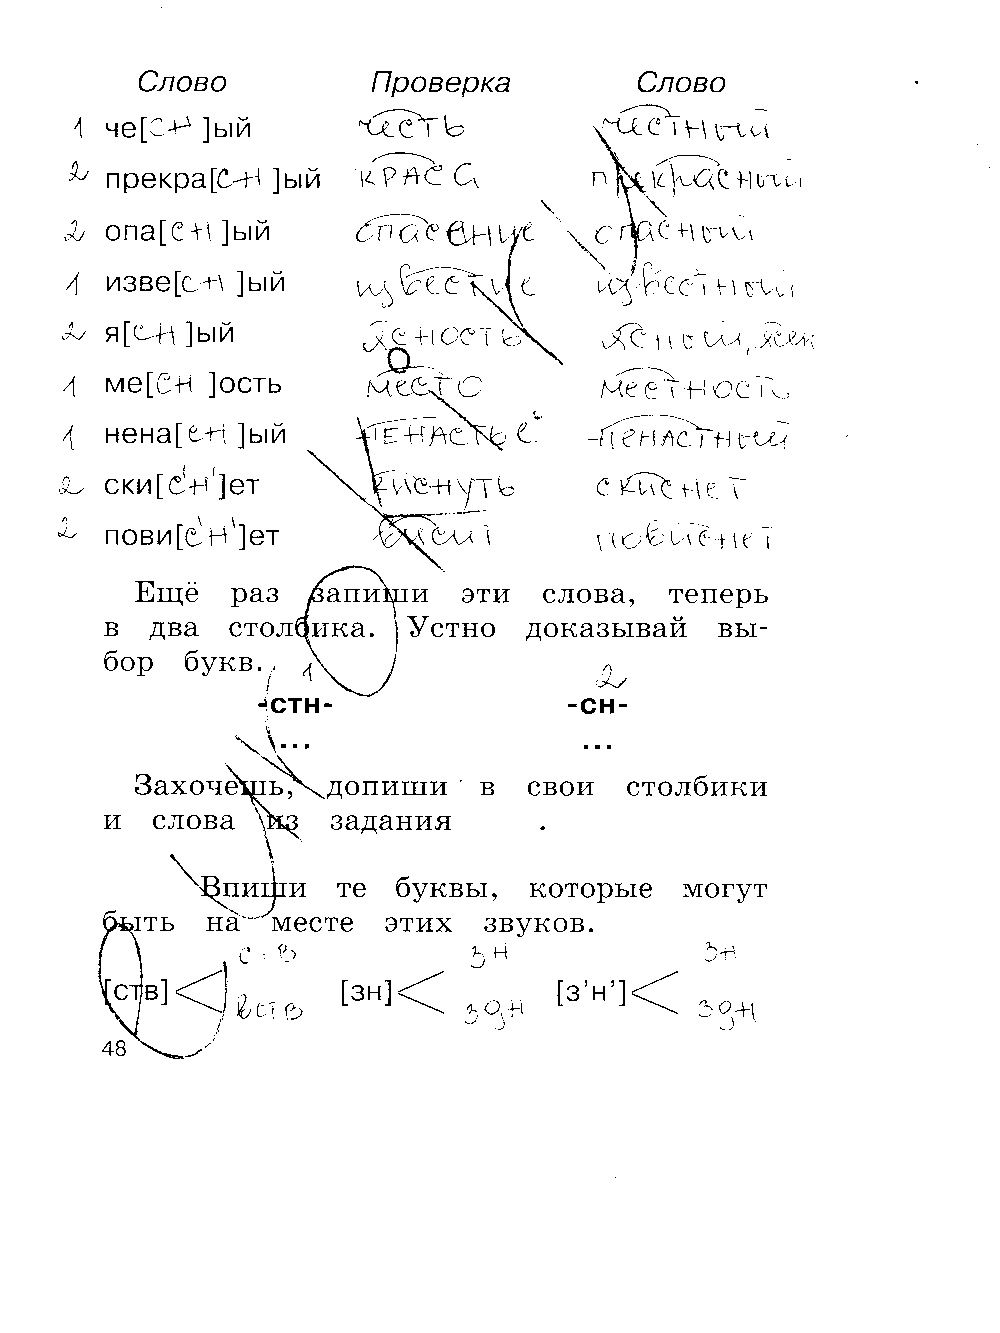 ГДЗ Русский язык 2 класс - стр. 48